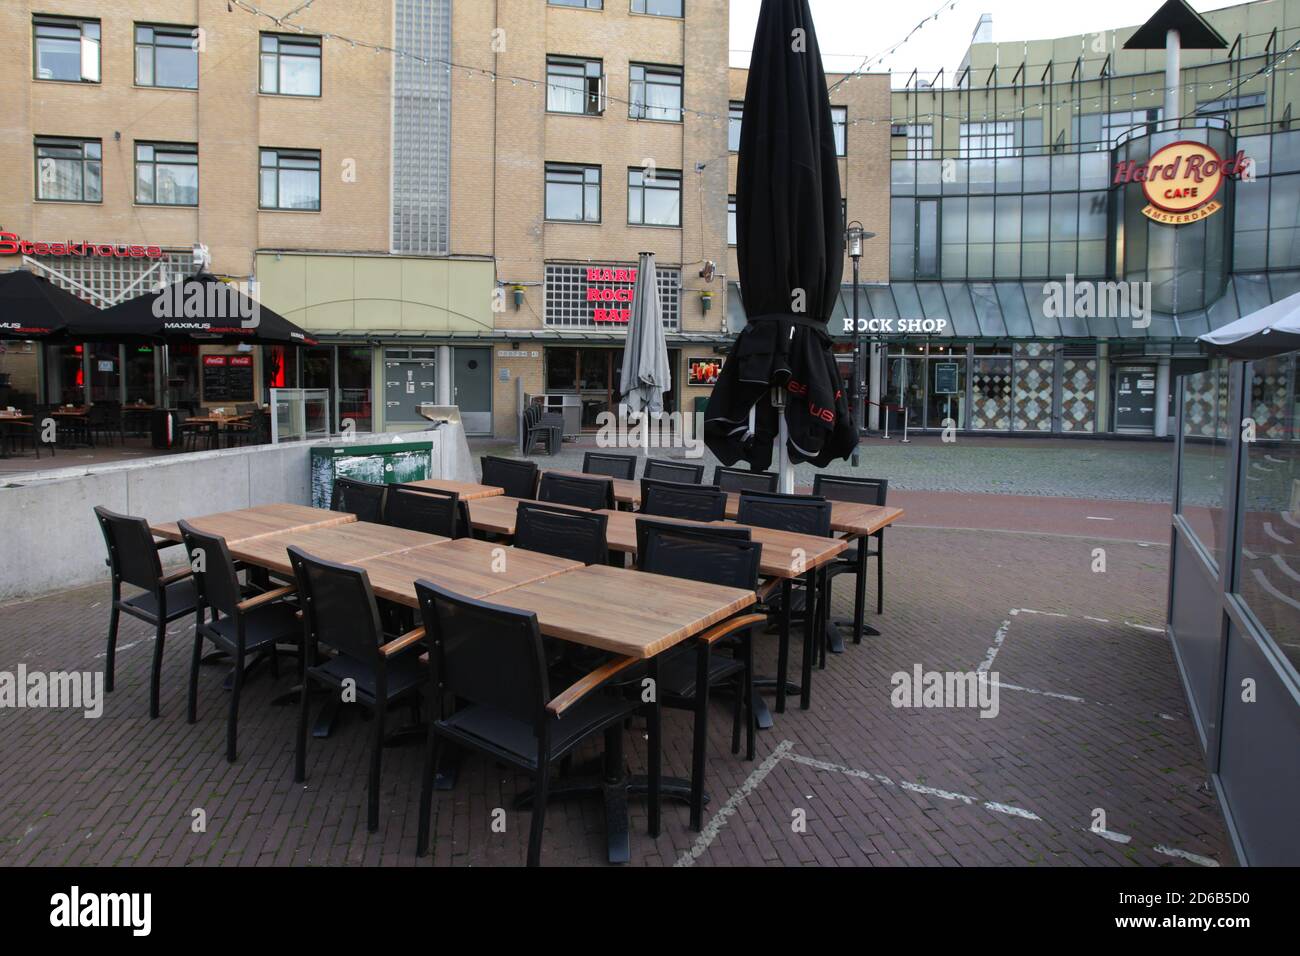 Una vista generale sulla terrazza con bar, caffè e ristoranti chiusi in mezzo alla pandemia di Coronavirus il 14 ottobre 2020 ad Amsterdam, Paesi Bassi. Th Foto Stock